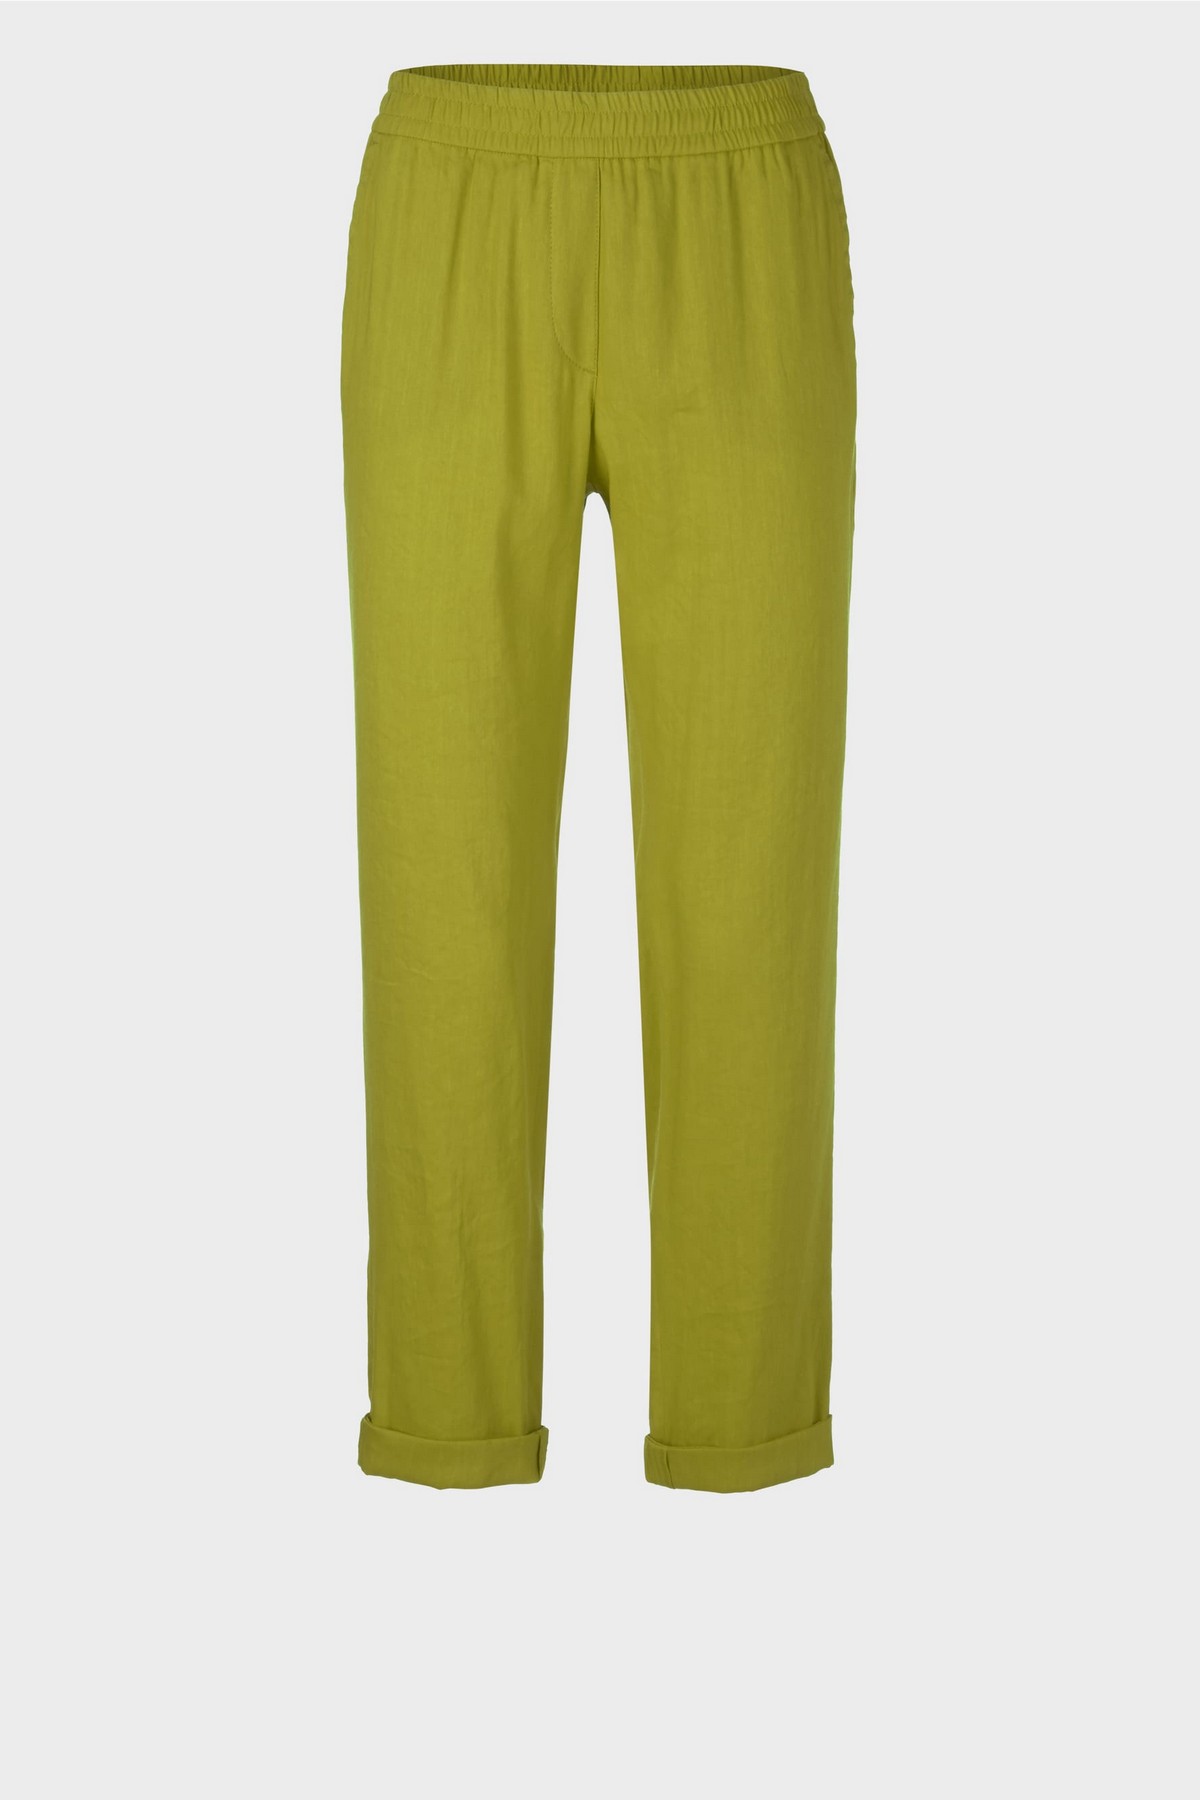 Linnen broek met joggingband in de kleur groen van het merk Marc Cain Collections